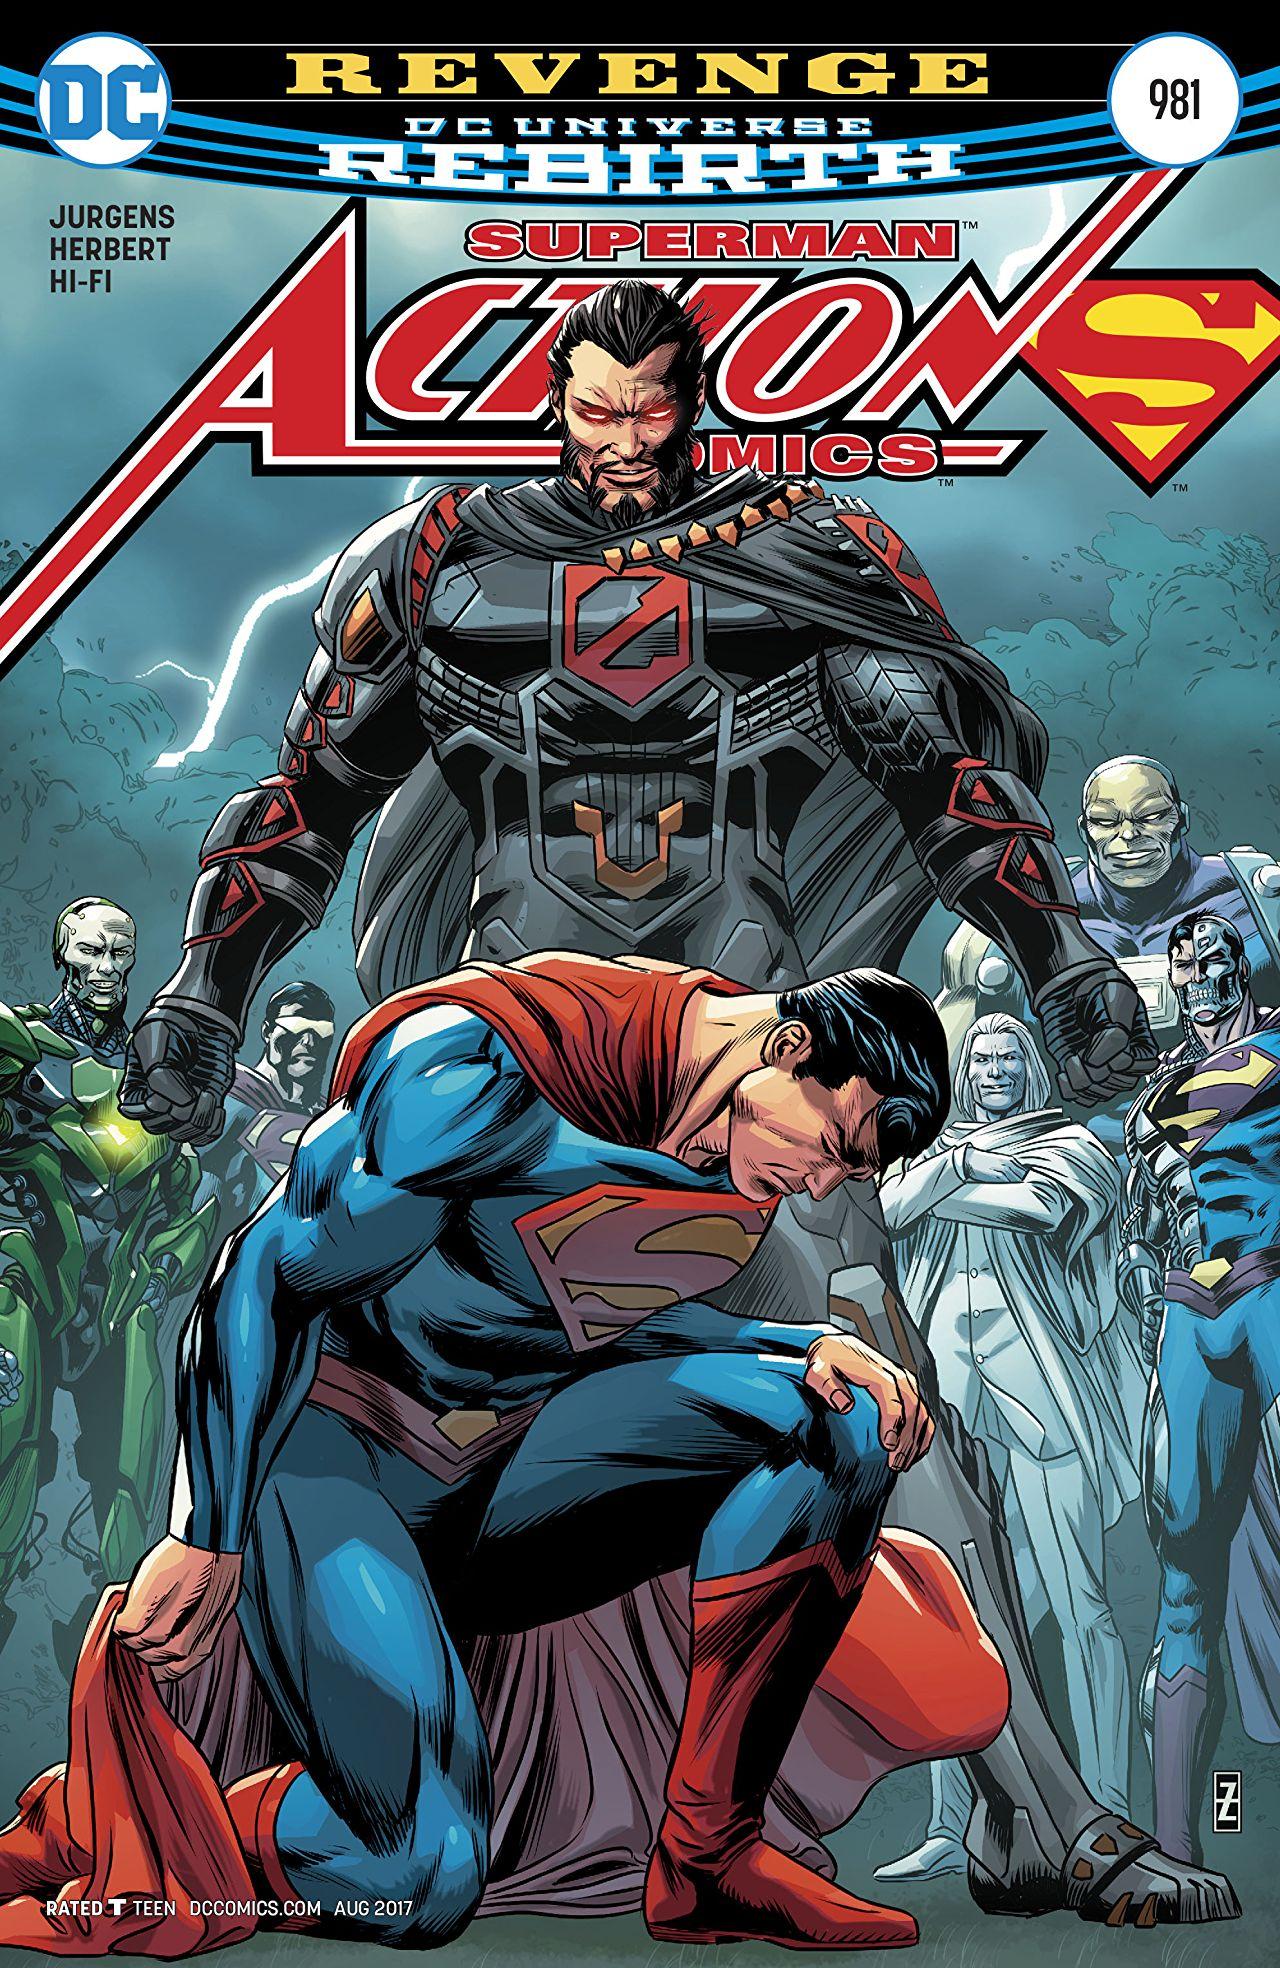 Action Comics Vol. 1 #981